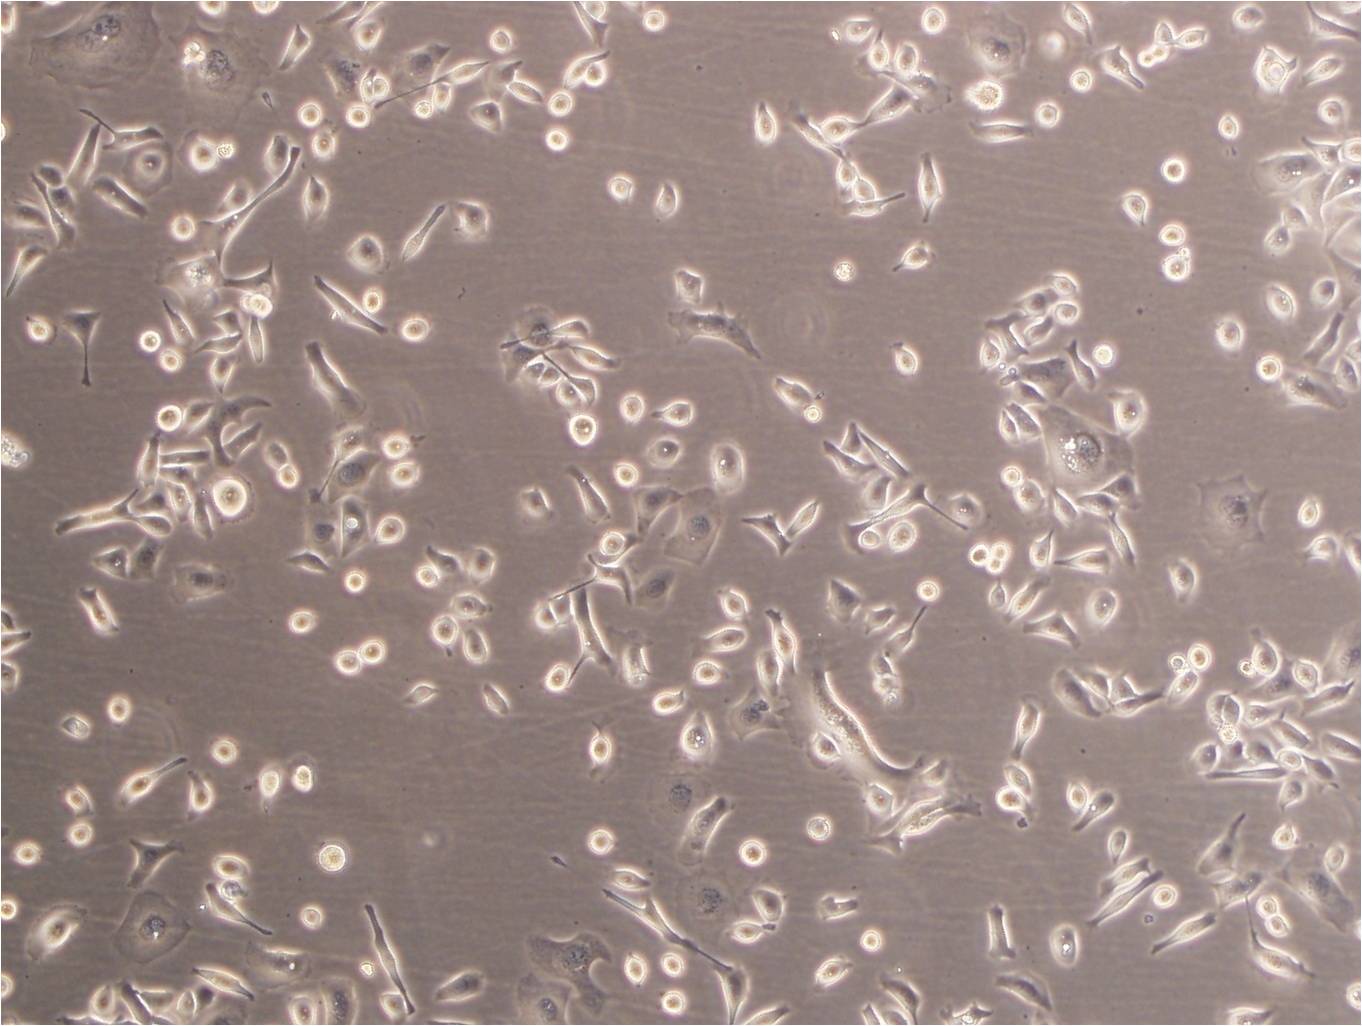 NCI-H2081 epithelioid cells人小细胞肺癌细胞系